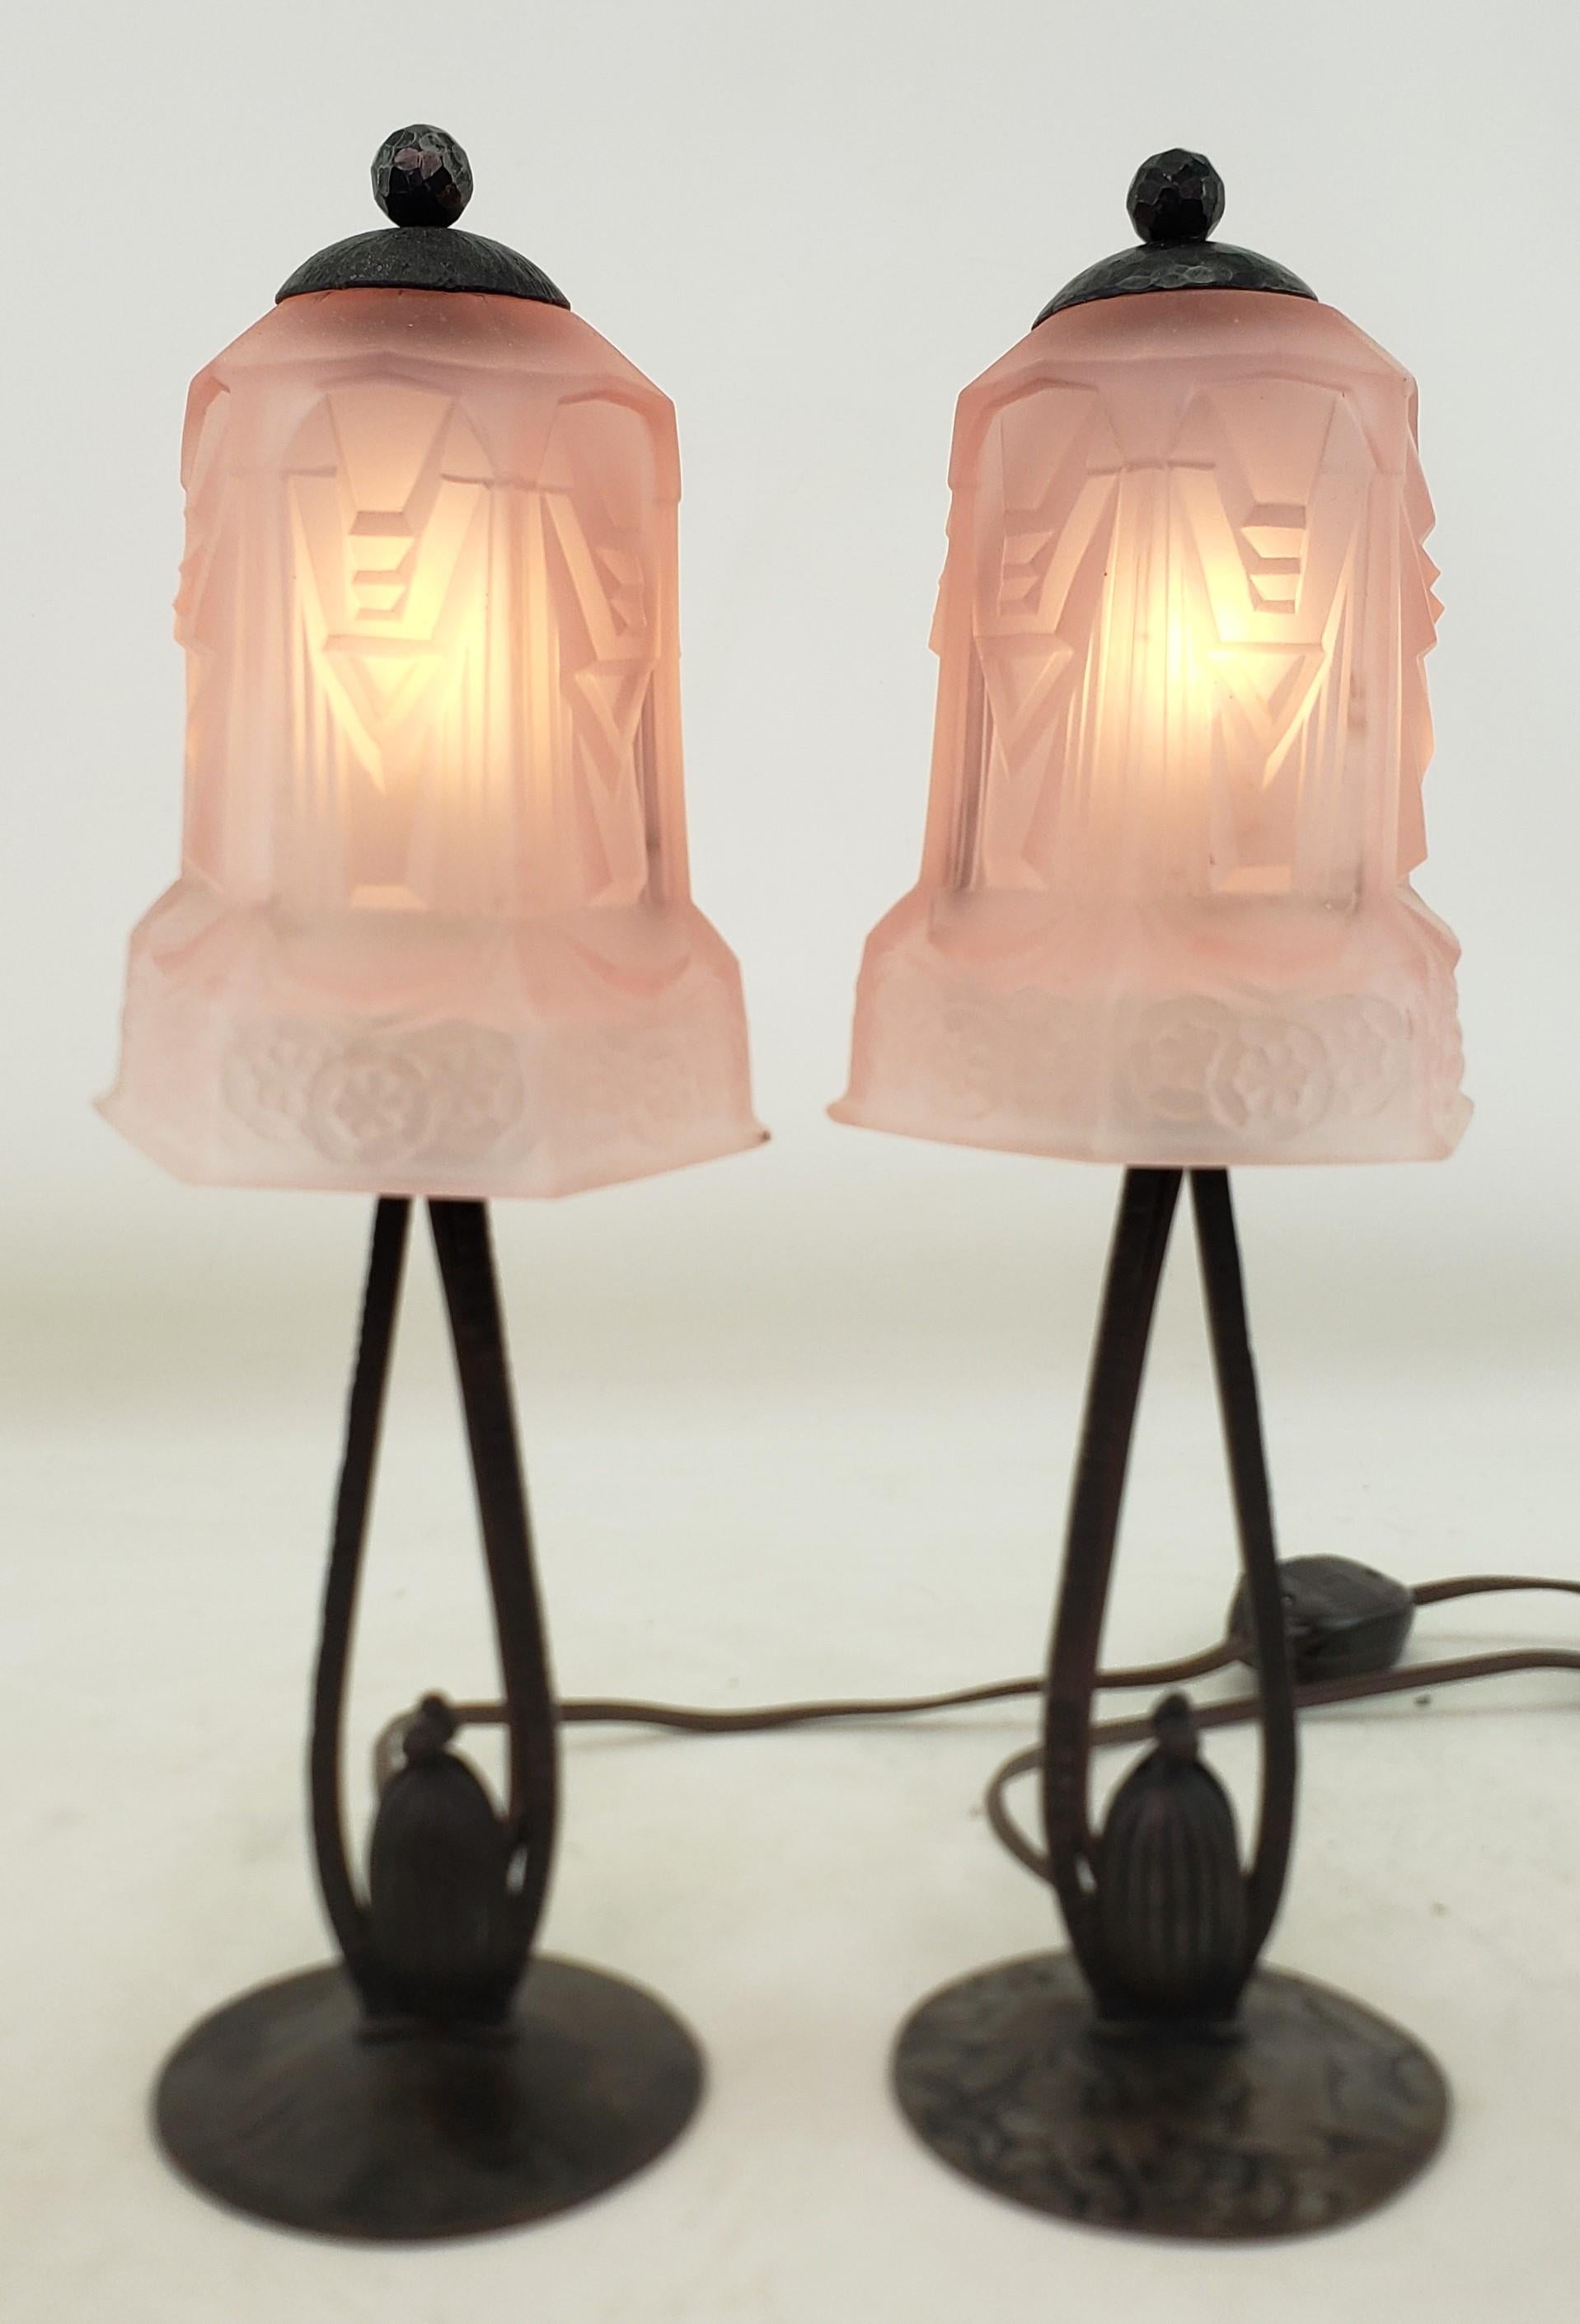 Dieses Paar kleiner antiker Tischlampen ist unsigniert, stammt aber vermutlich aus Frankreich und wurde um 1920 im Art-déco-Stil gefertigt. Die Lampenfüße bestehen aus bronzefarbenem, patiniertem Stahl und die Schirme aus dickem, geformtem rosa